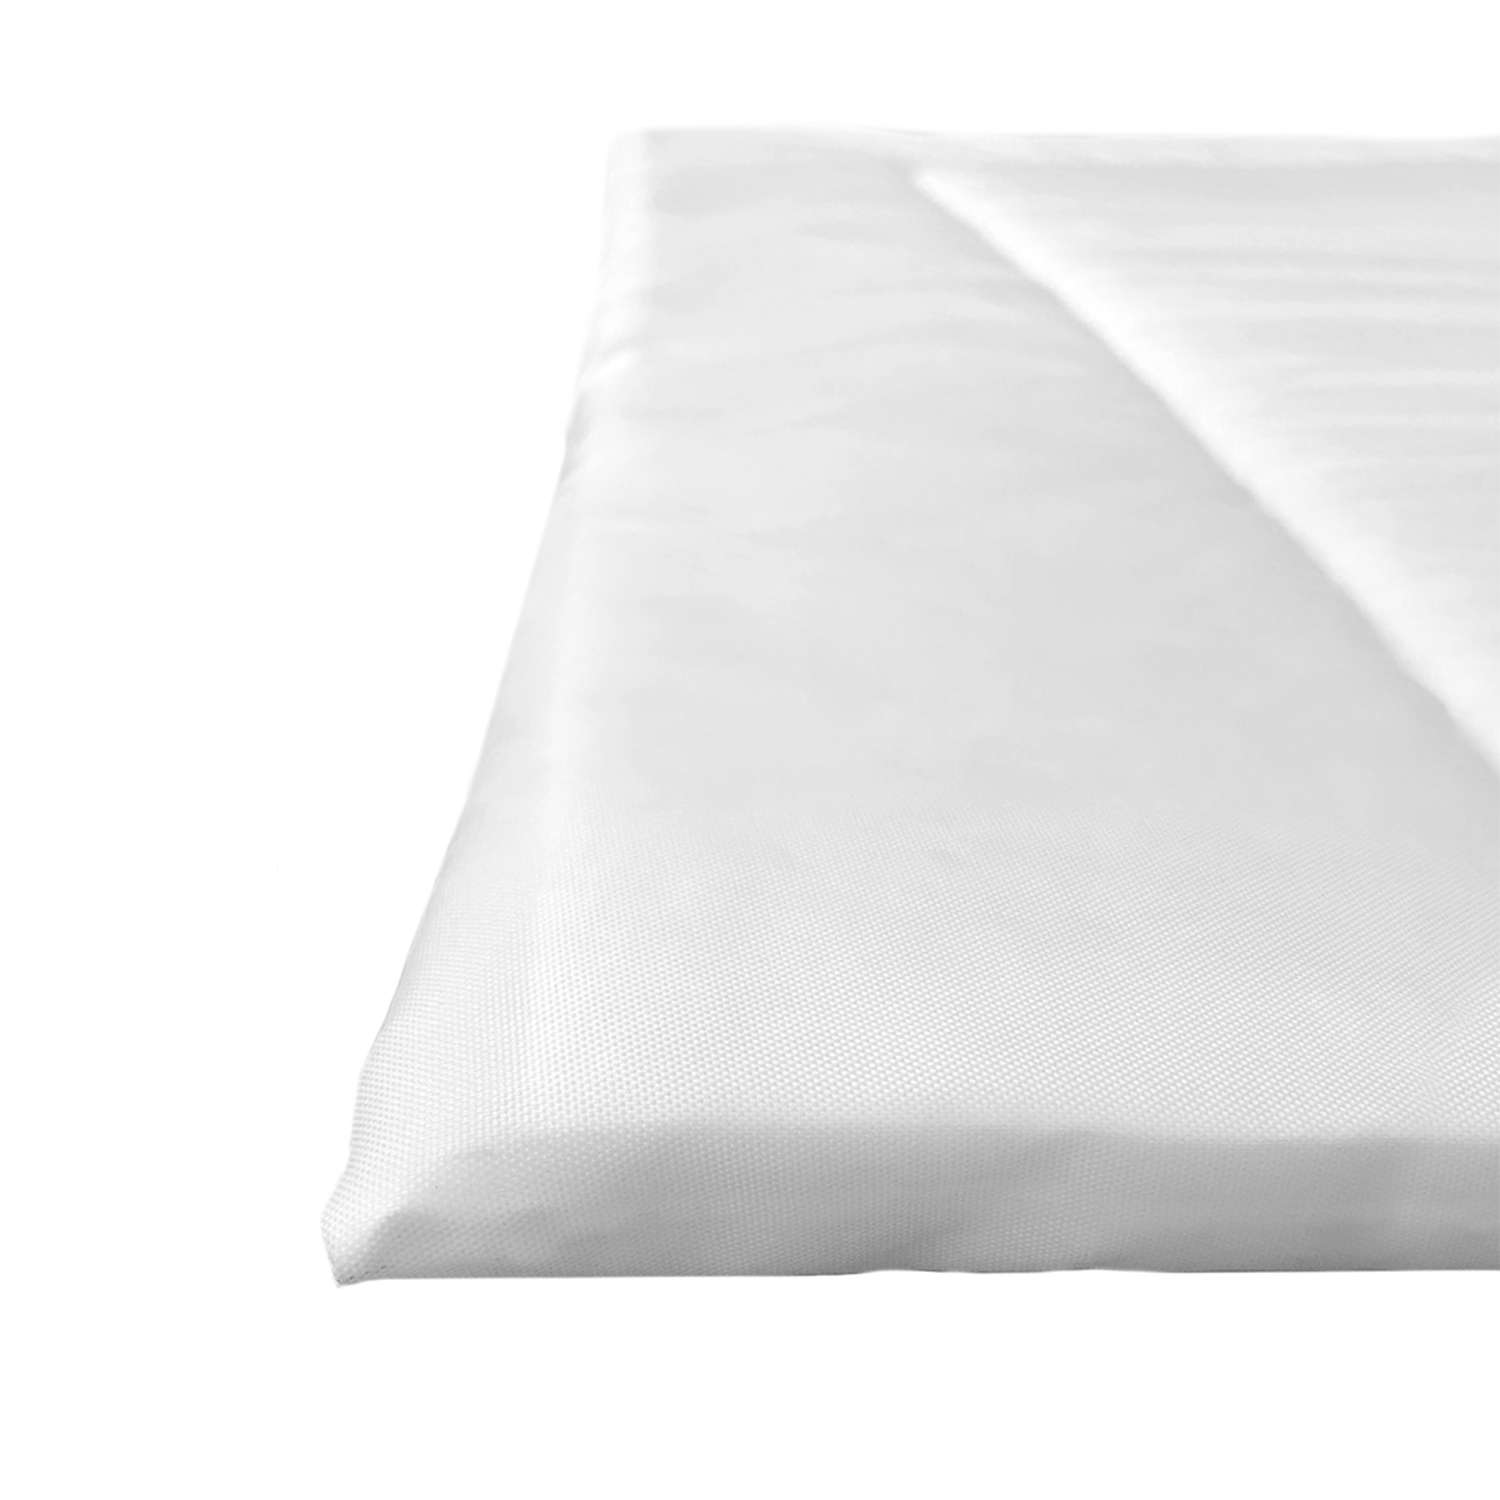 Матрас на пеленальный столик sfer.tex 70х50 см белый универсальный - фото 5